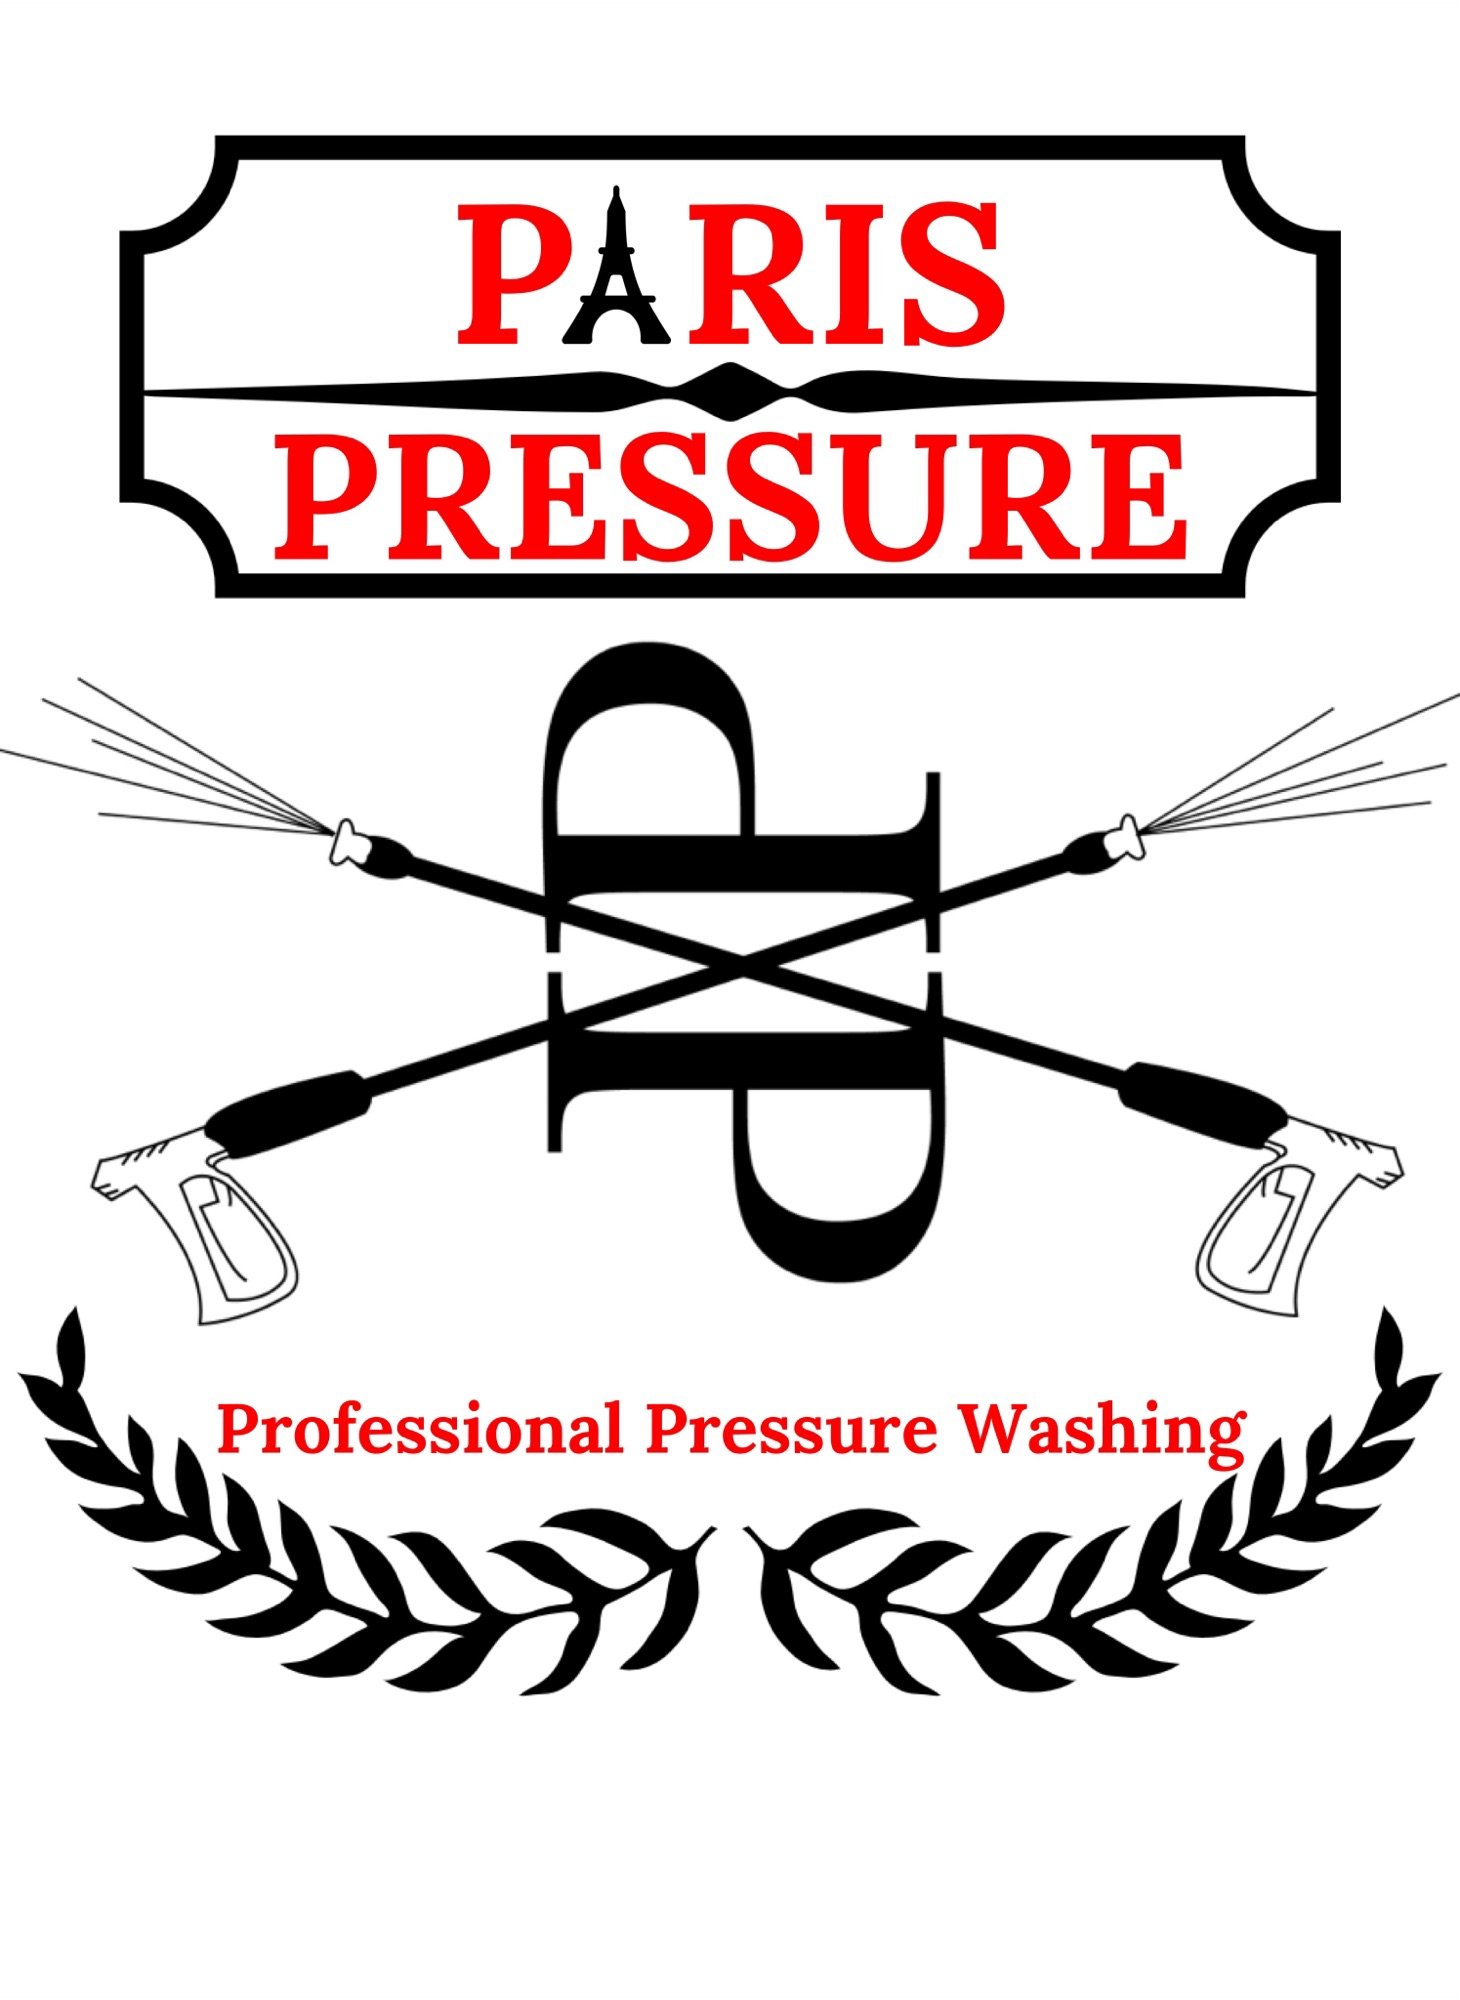 Paris Pressure, LLC Logo